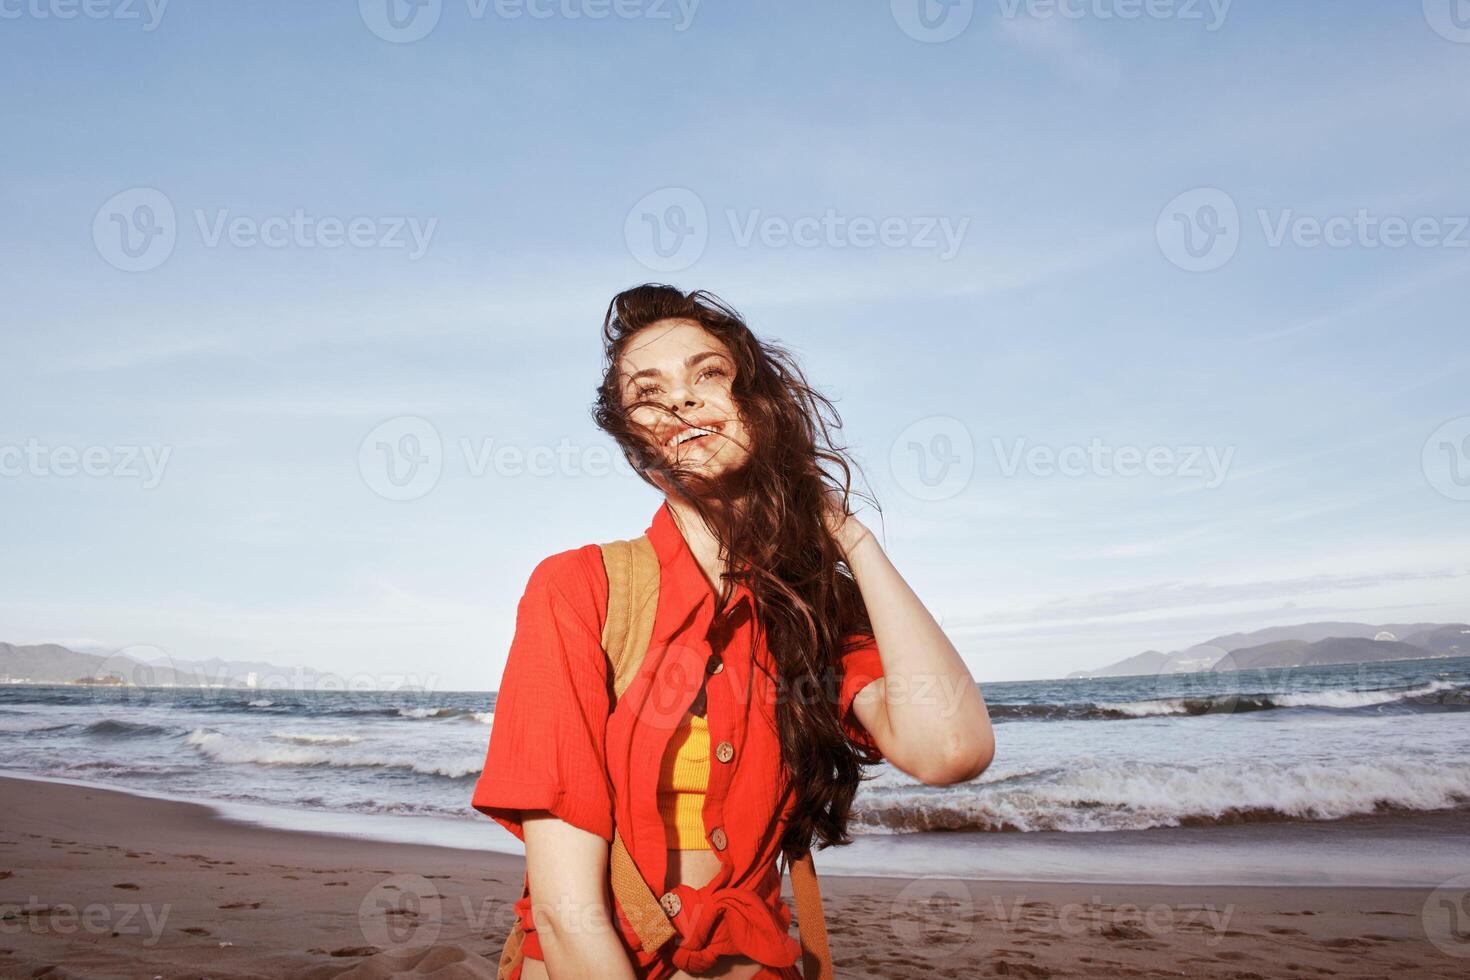 Beijado pelo sol, ensolarado liberdade. uma alegre mulher abraçando vida de a azul mar foto